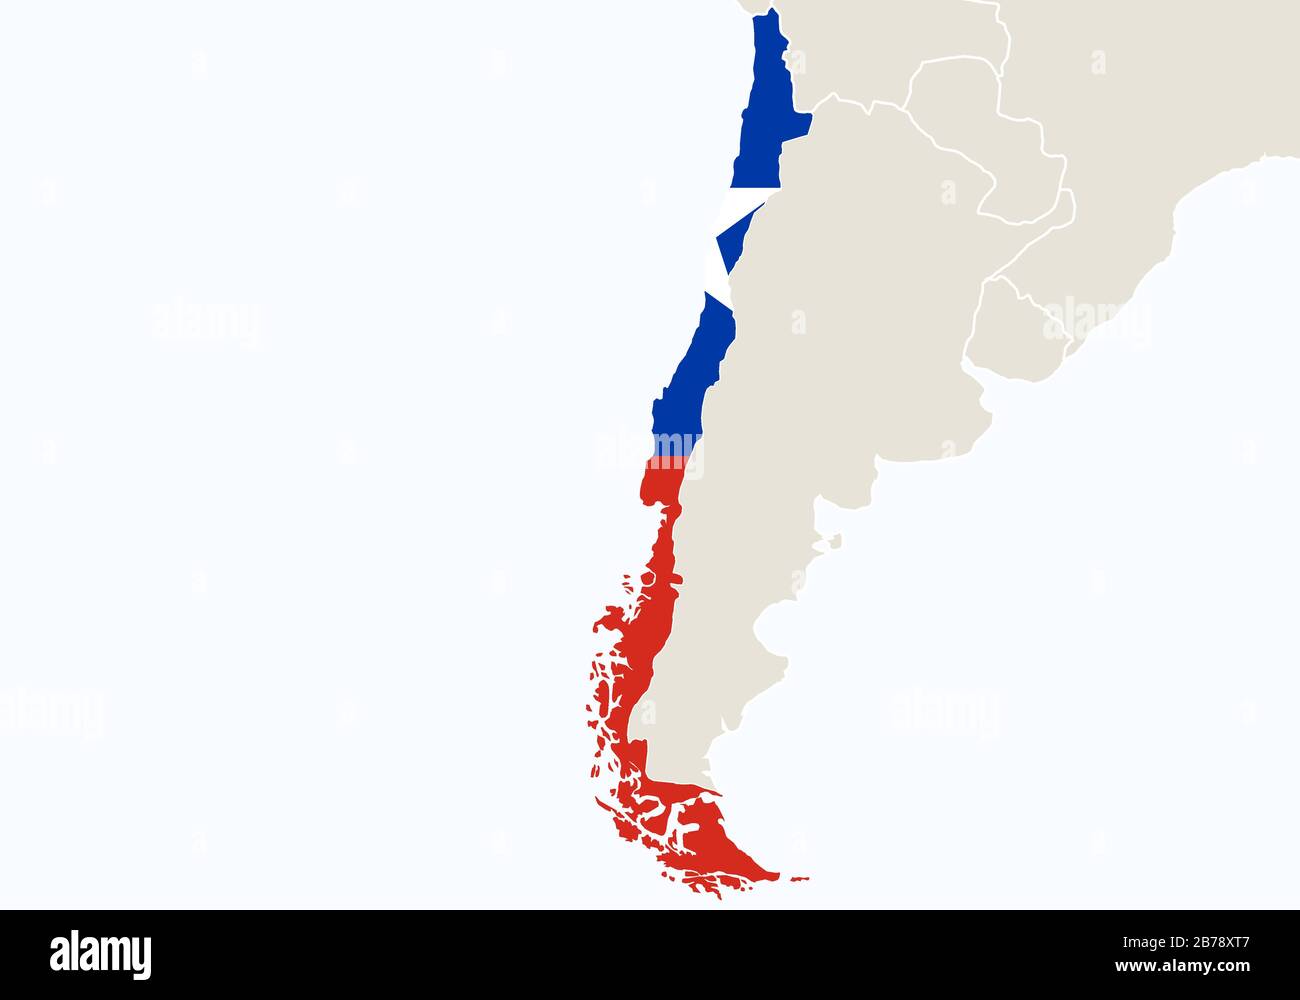 Südamerika mit hervorgehobener Chile-Karte. Vektorgrafiken. Stock Vektor